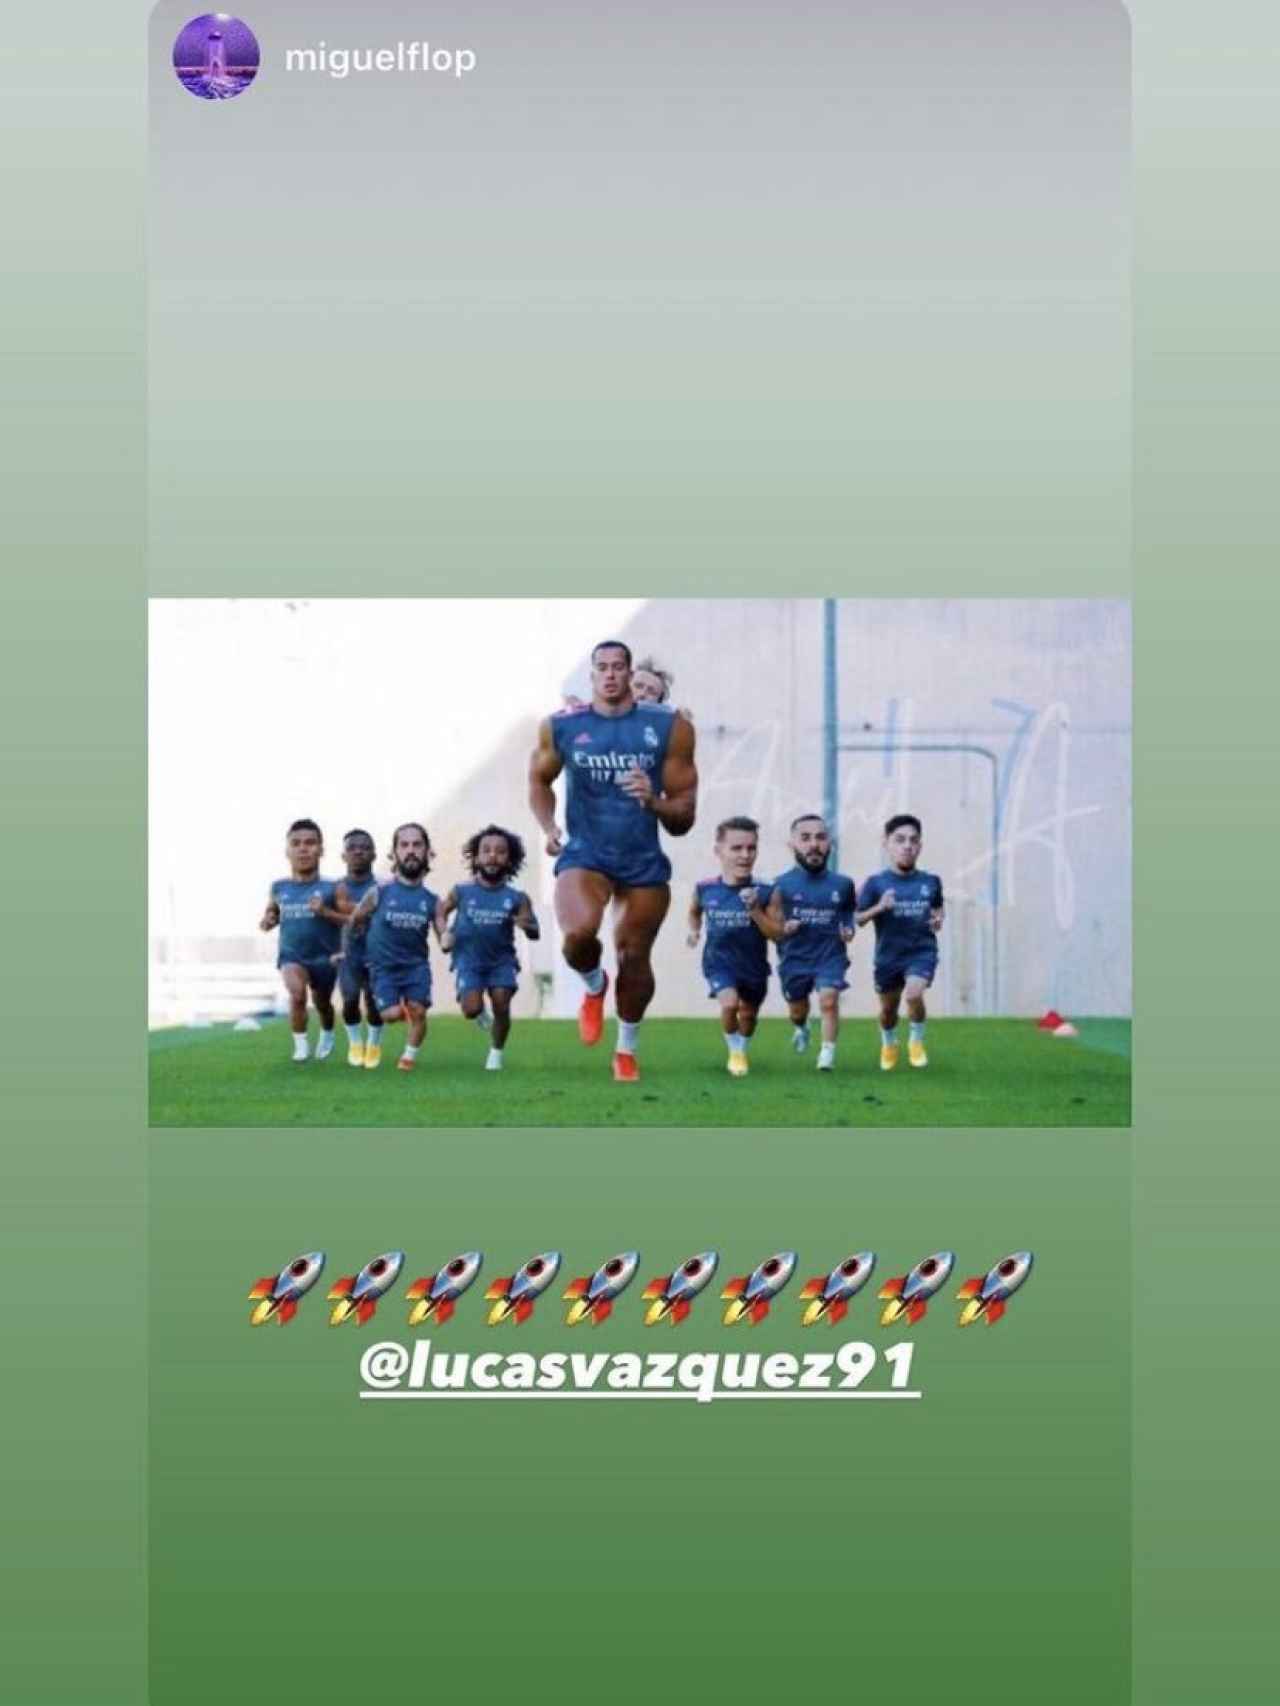 La mofa de Lucas Vázquez en su cuenta de Instagram